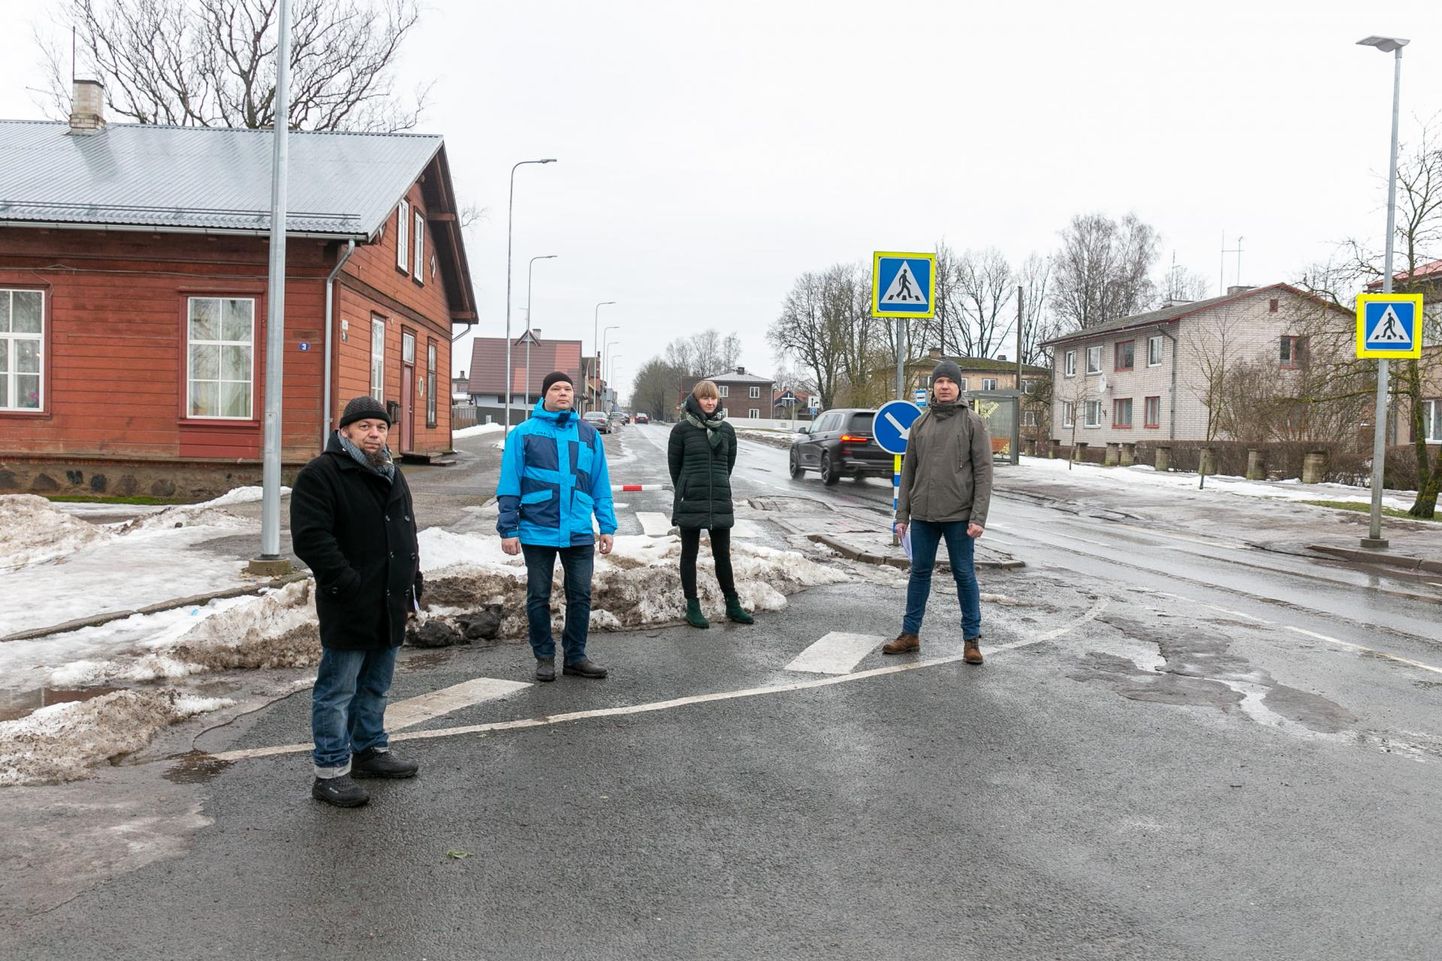 Uue tänava elanikud ei ole sugugi rahul, et tänav muudetakse kahesuunaliseks. Pildil Janno Sild, Ats Riisenberg, Toivo Alas ja Kaari Metslang.